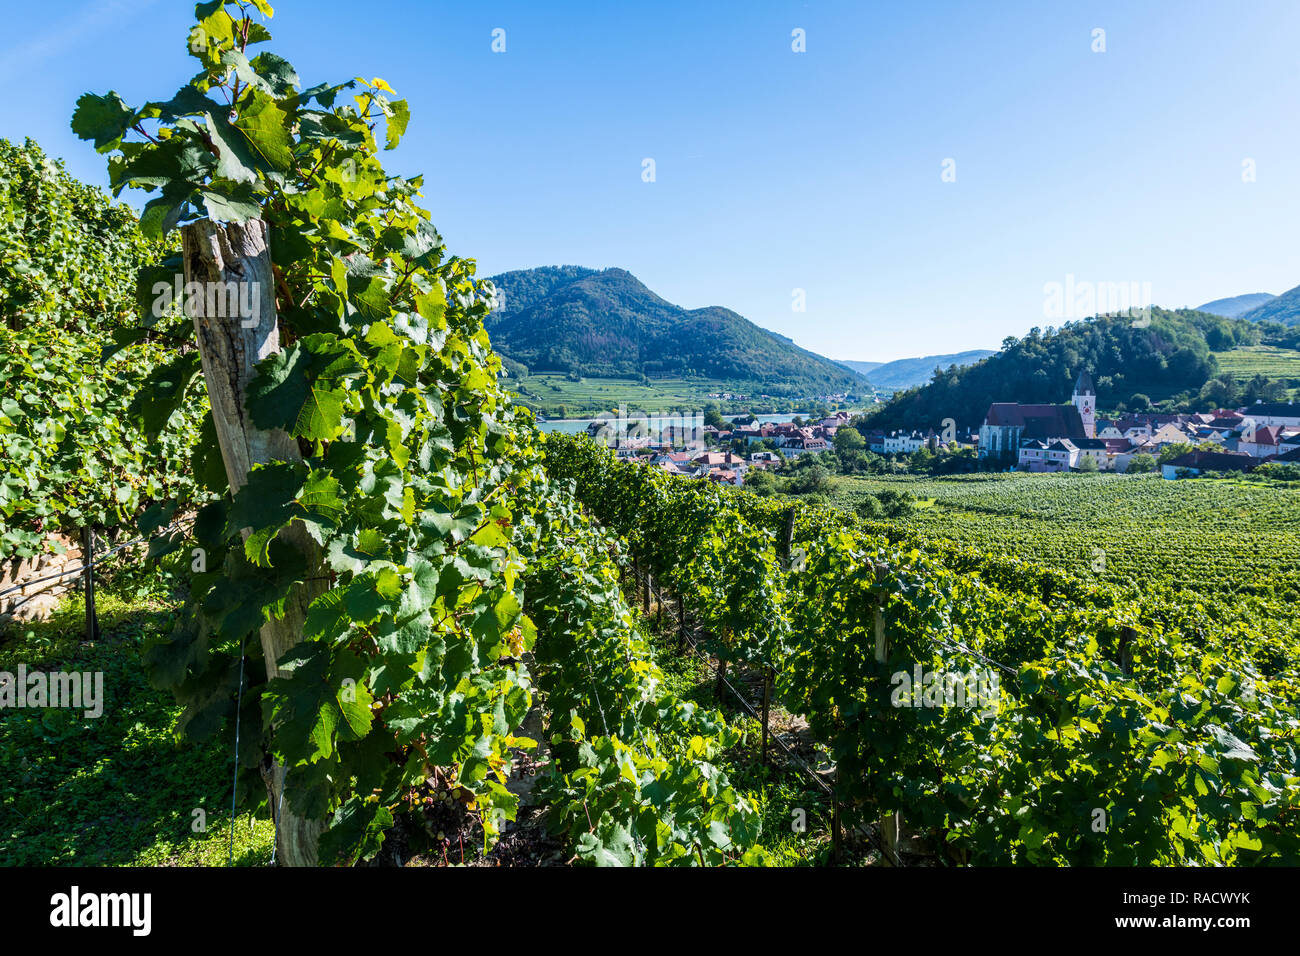 Donnant sur les vignobles de la région de Wachau, Spitz, UNESCO World Heritage Site, Autriche, Europe Banque D'Images